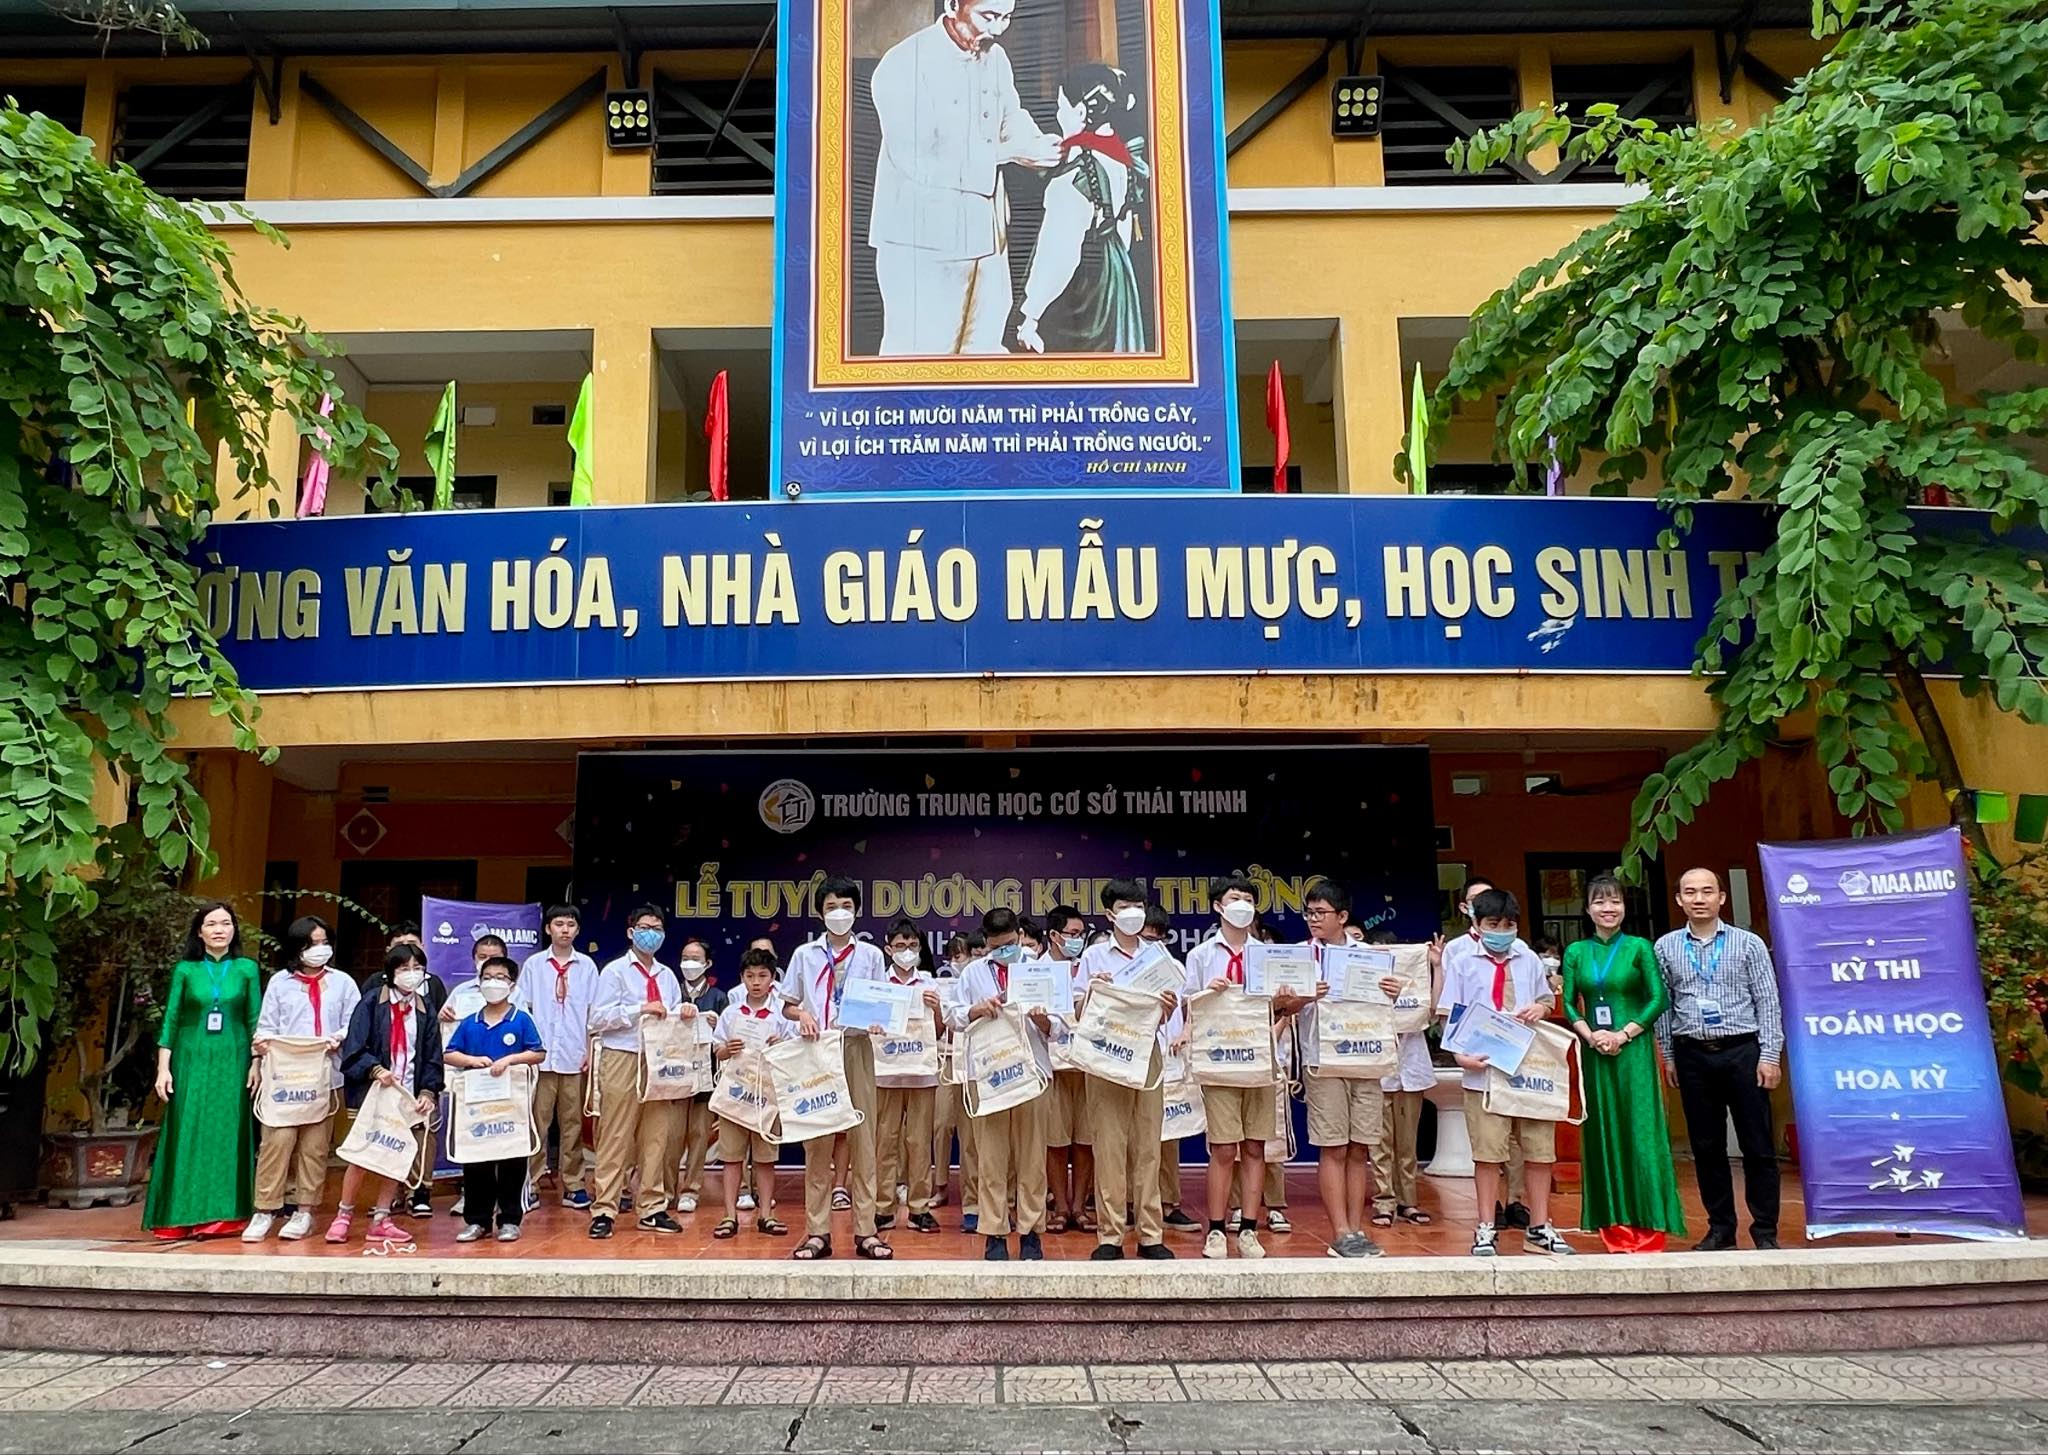 Trao giải cho học sinh có thành tích tốt trong kỳ thi AMC8 tại trường THCS Thái Thịnh